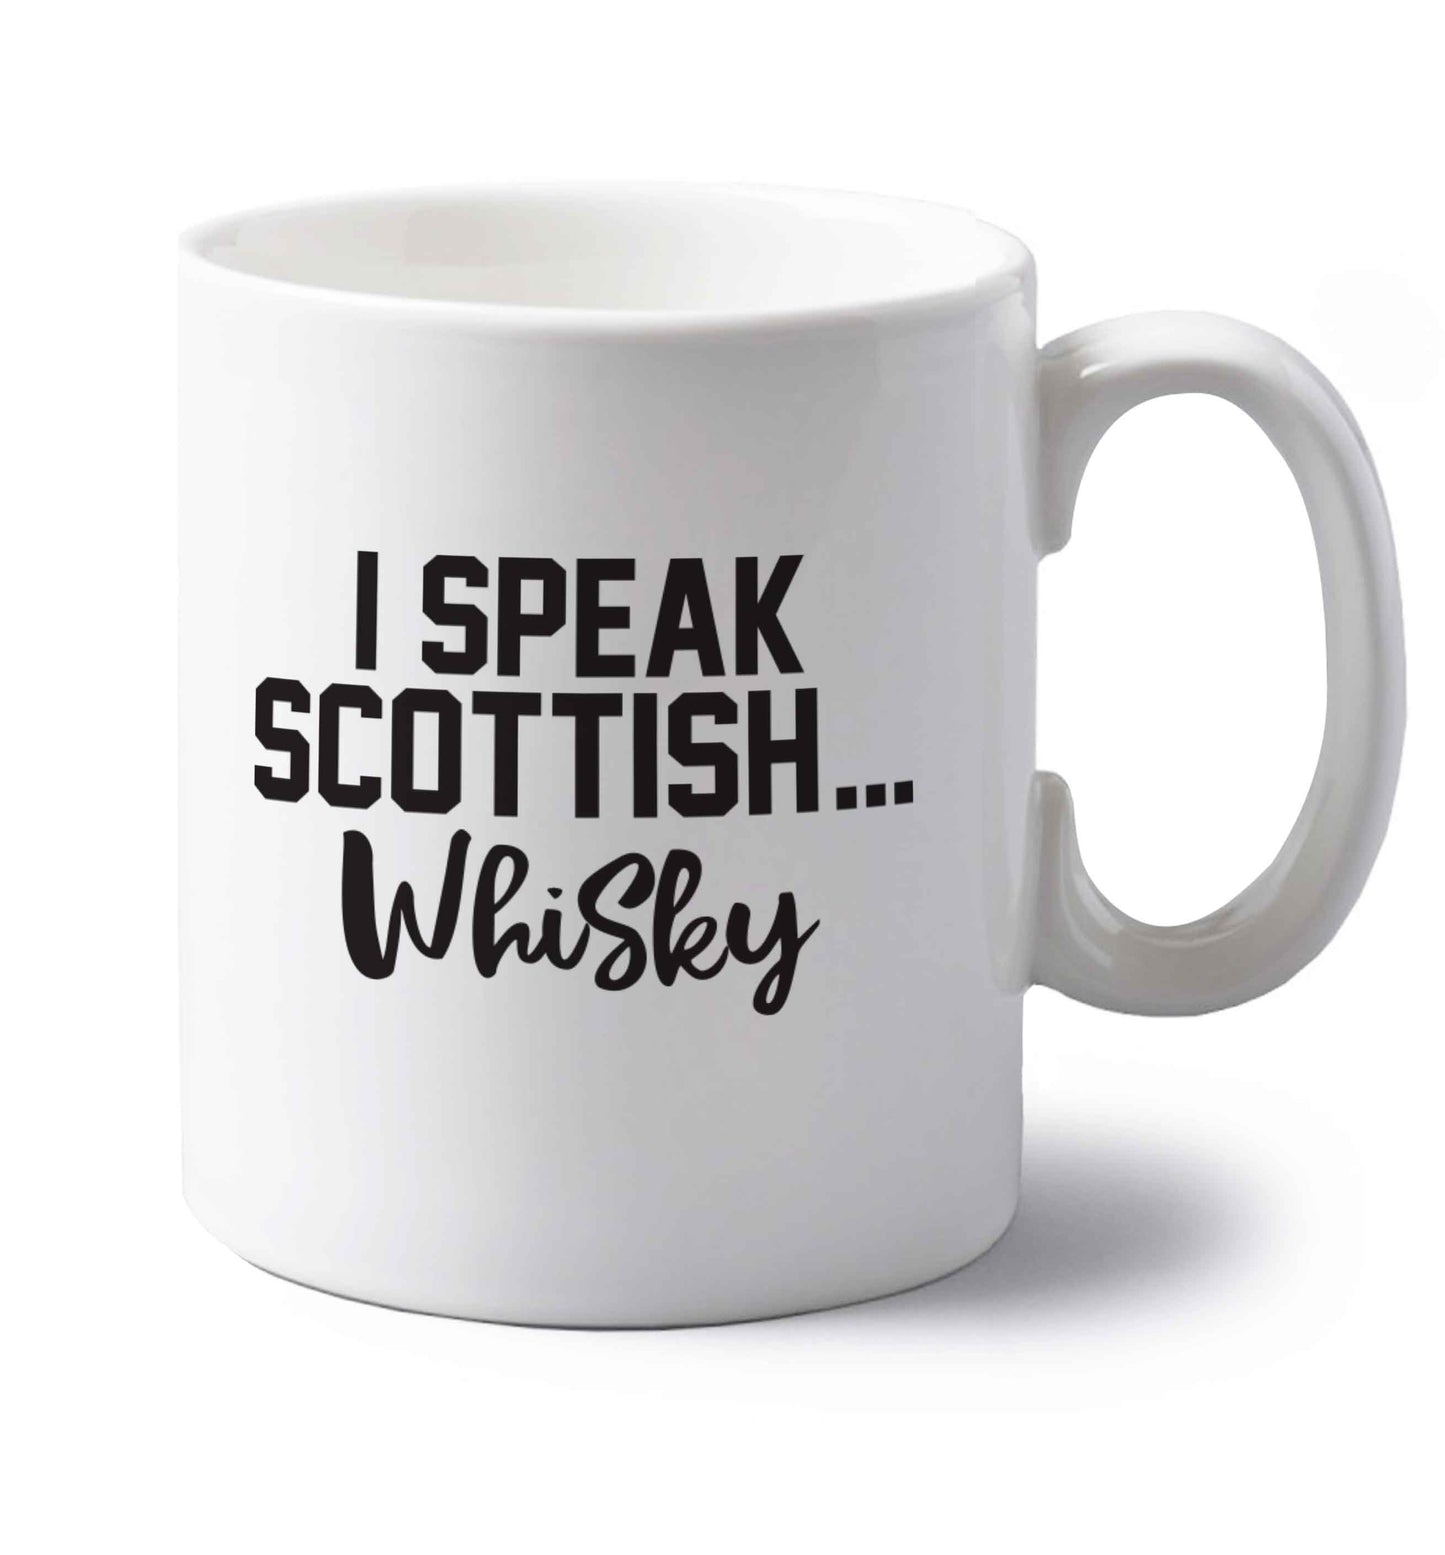 I speak scottish...whisky left handed white ceramic mug 